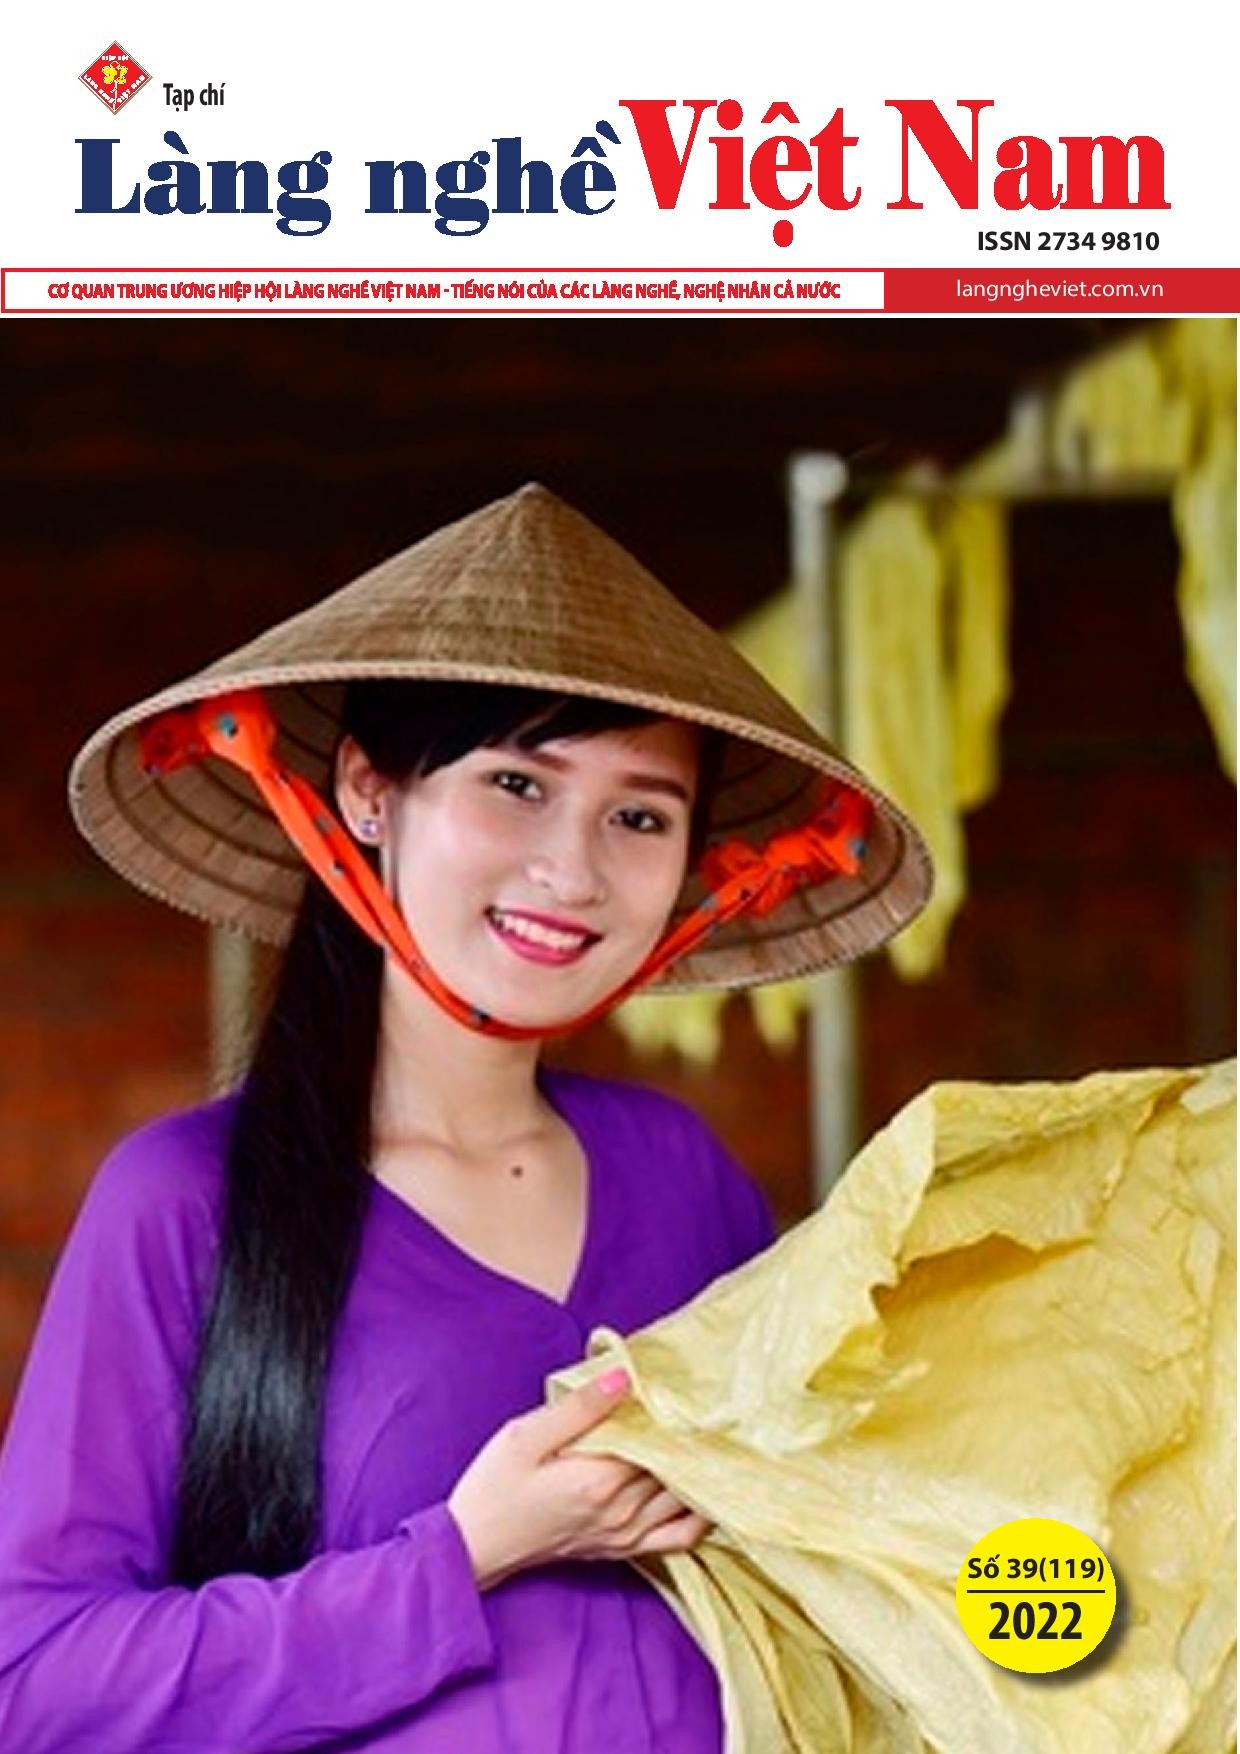 Tạp chí Làng nghề Việt Nam số 39 (119)/2022